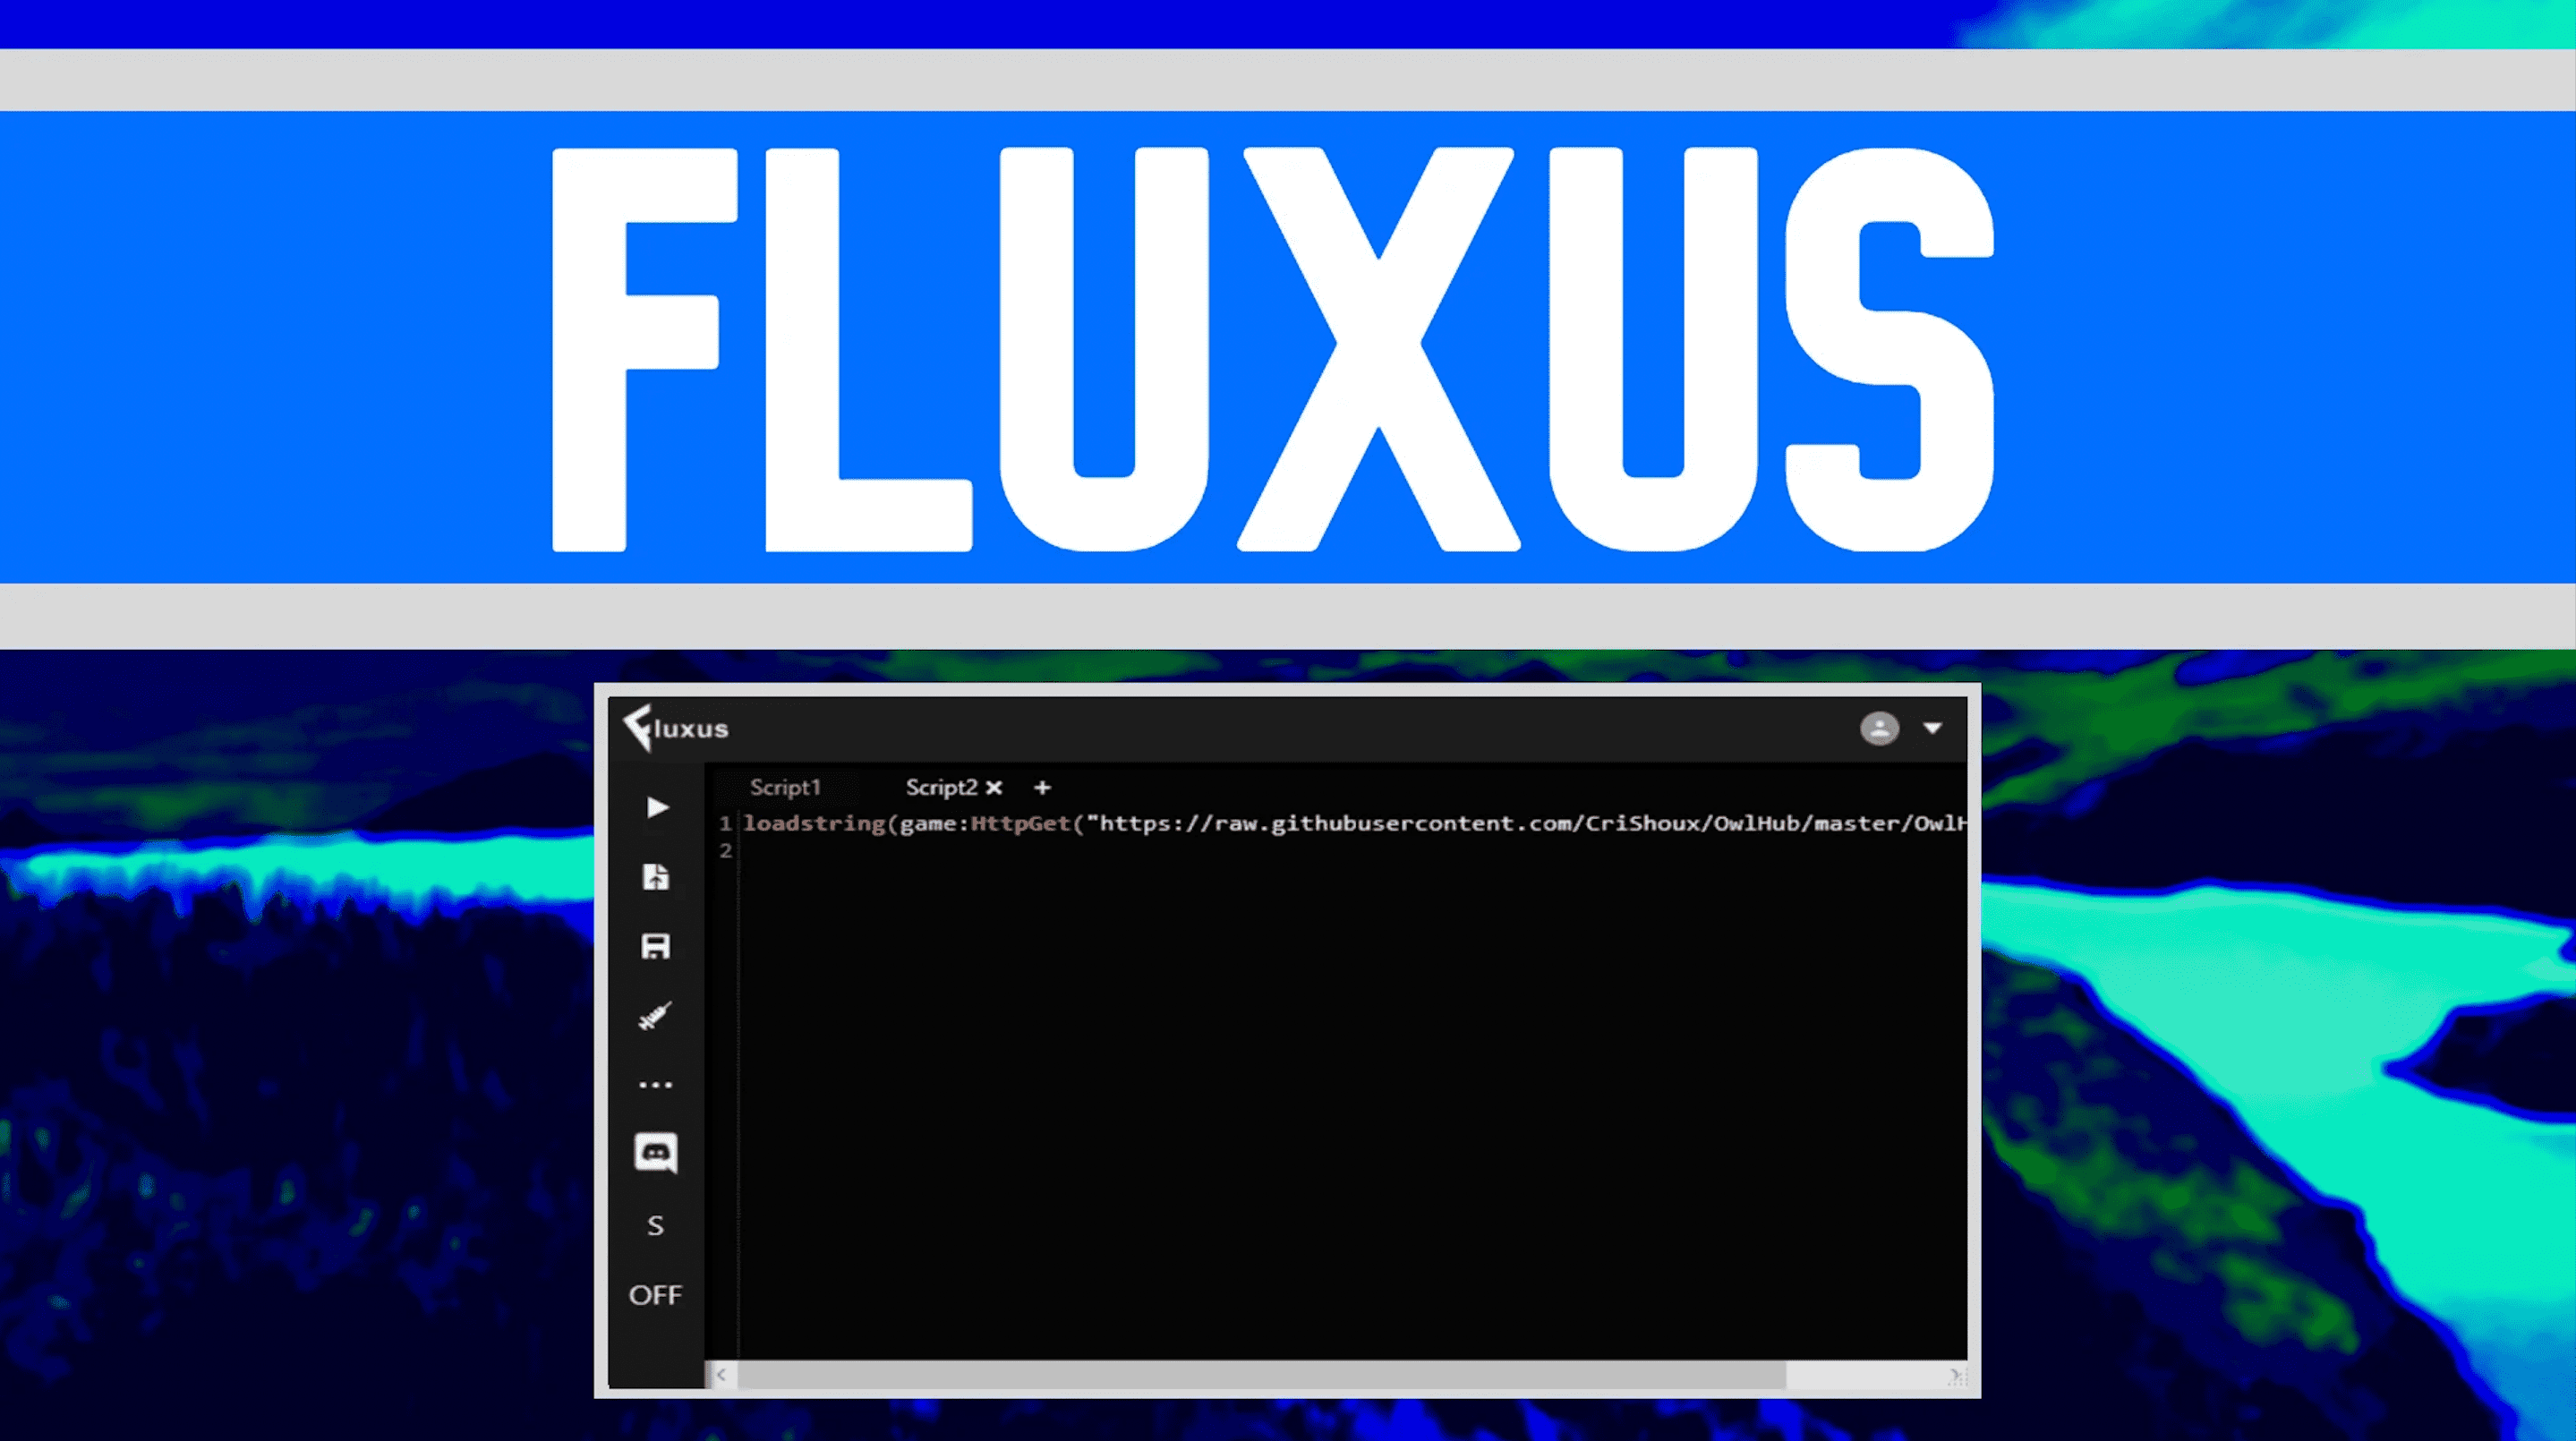 Stream Fluxus Pc Descargar Roblox by ScidimVcasthe